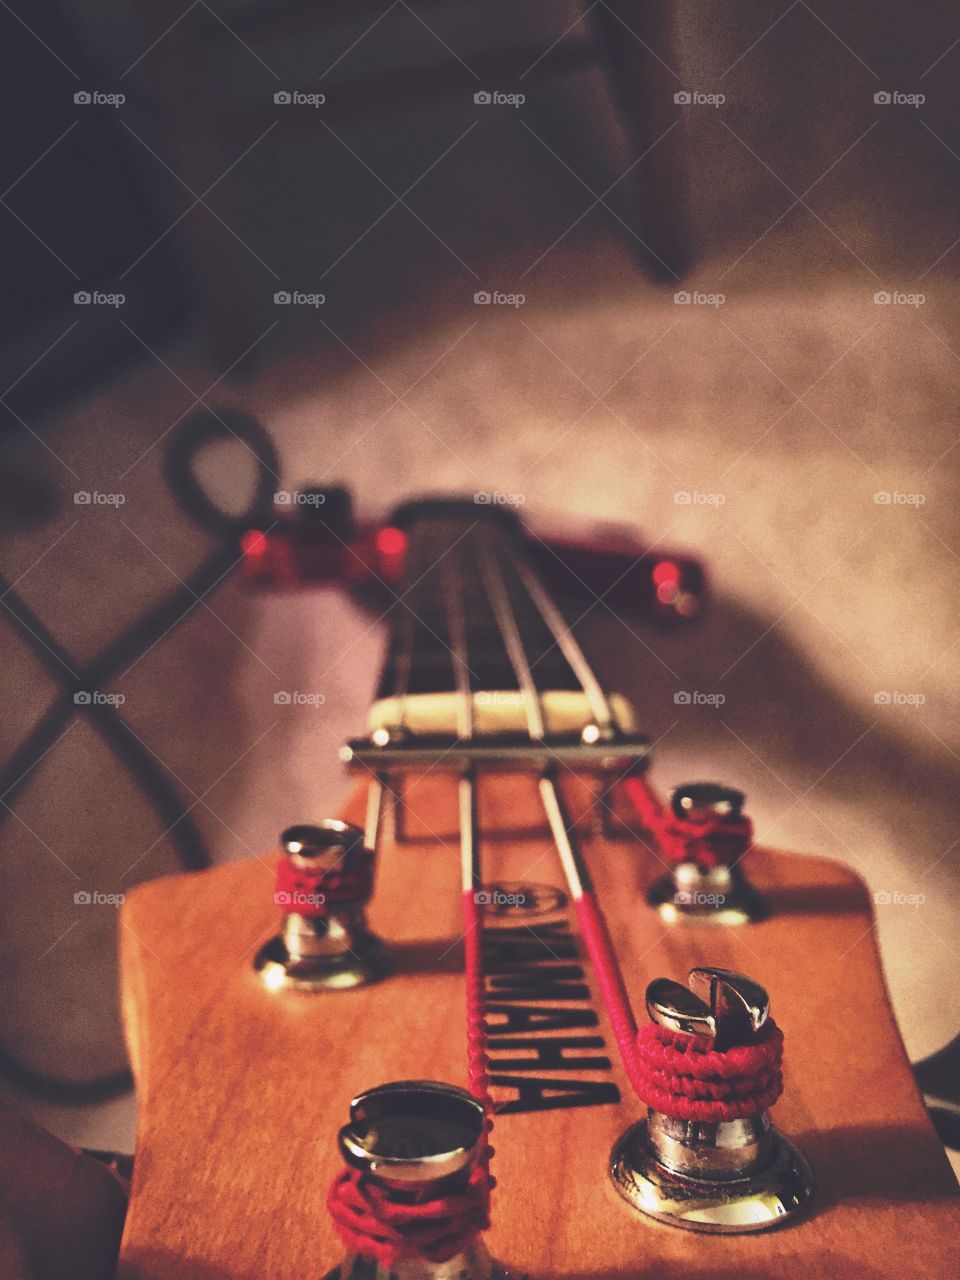 Bass guitar (red)